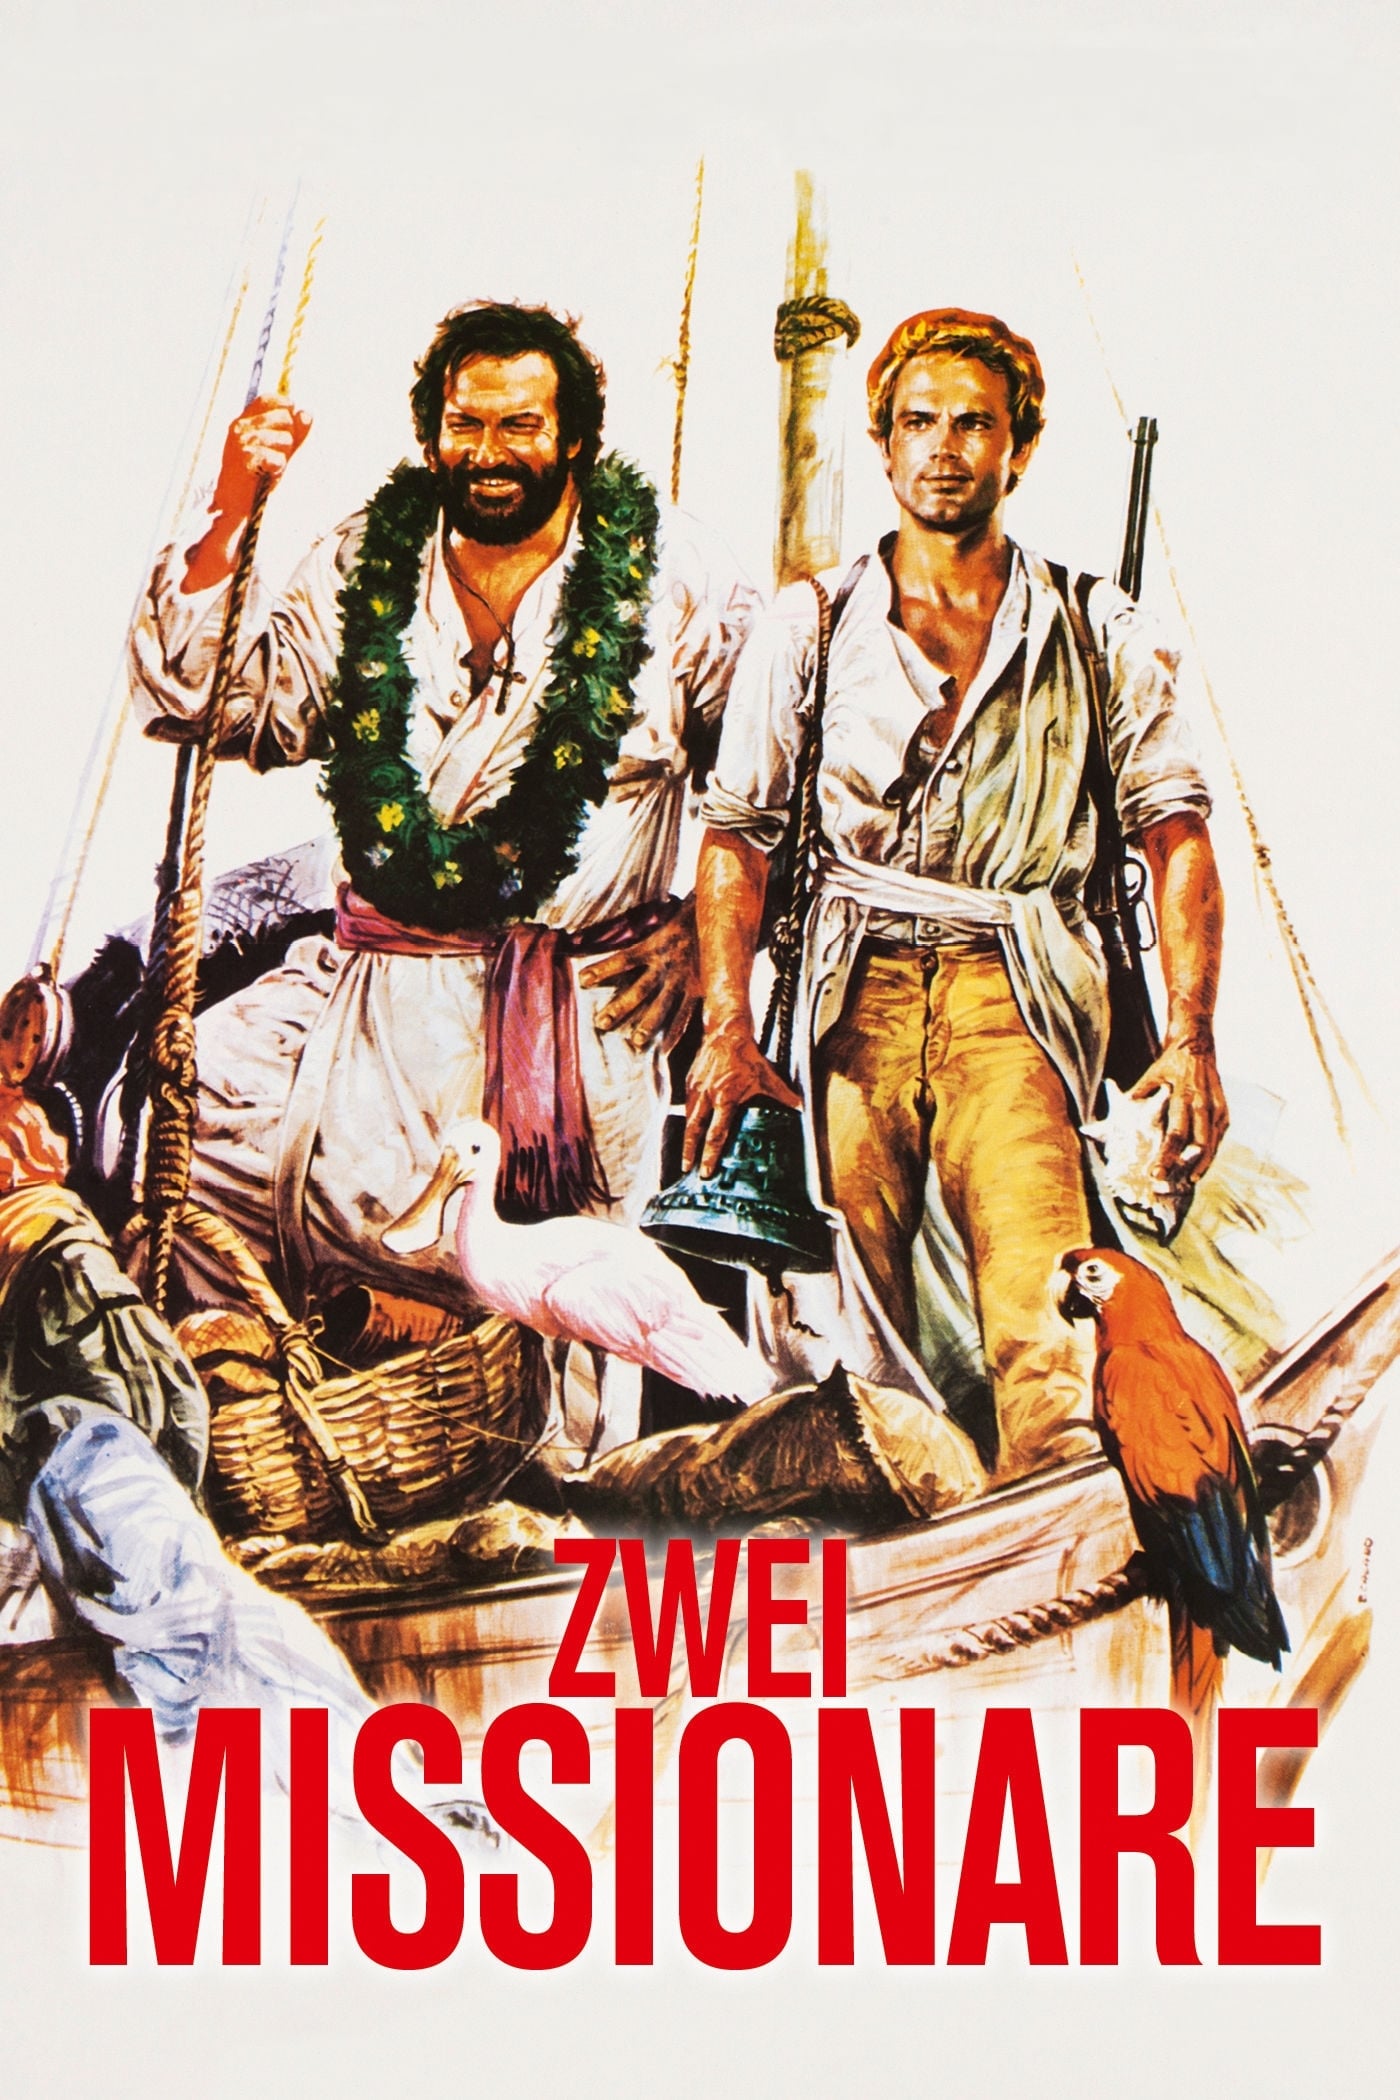 Plakat von "Zwei Missionare"